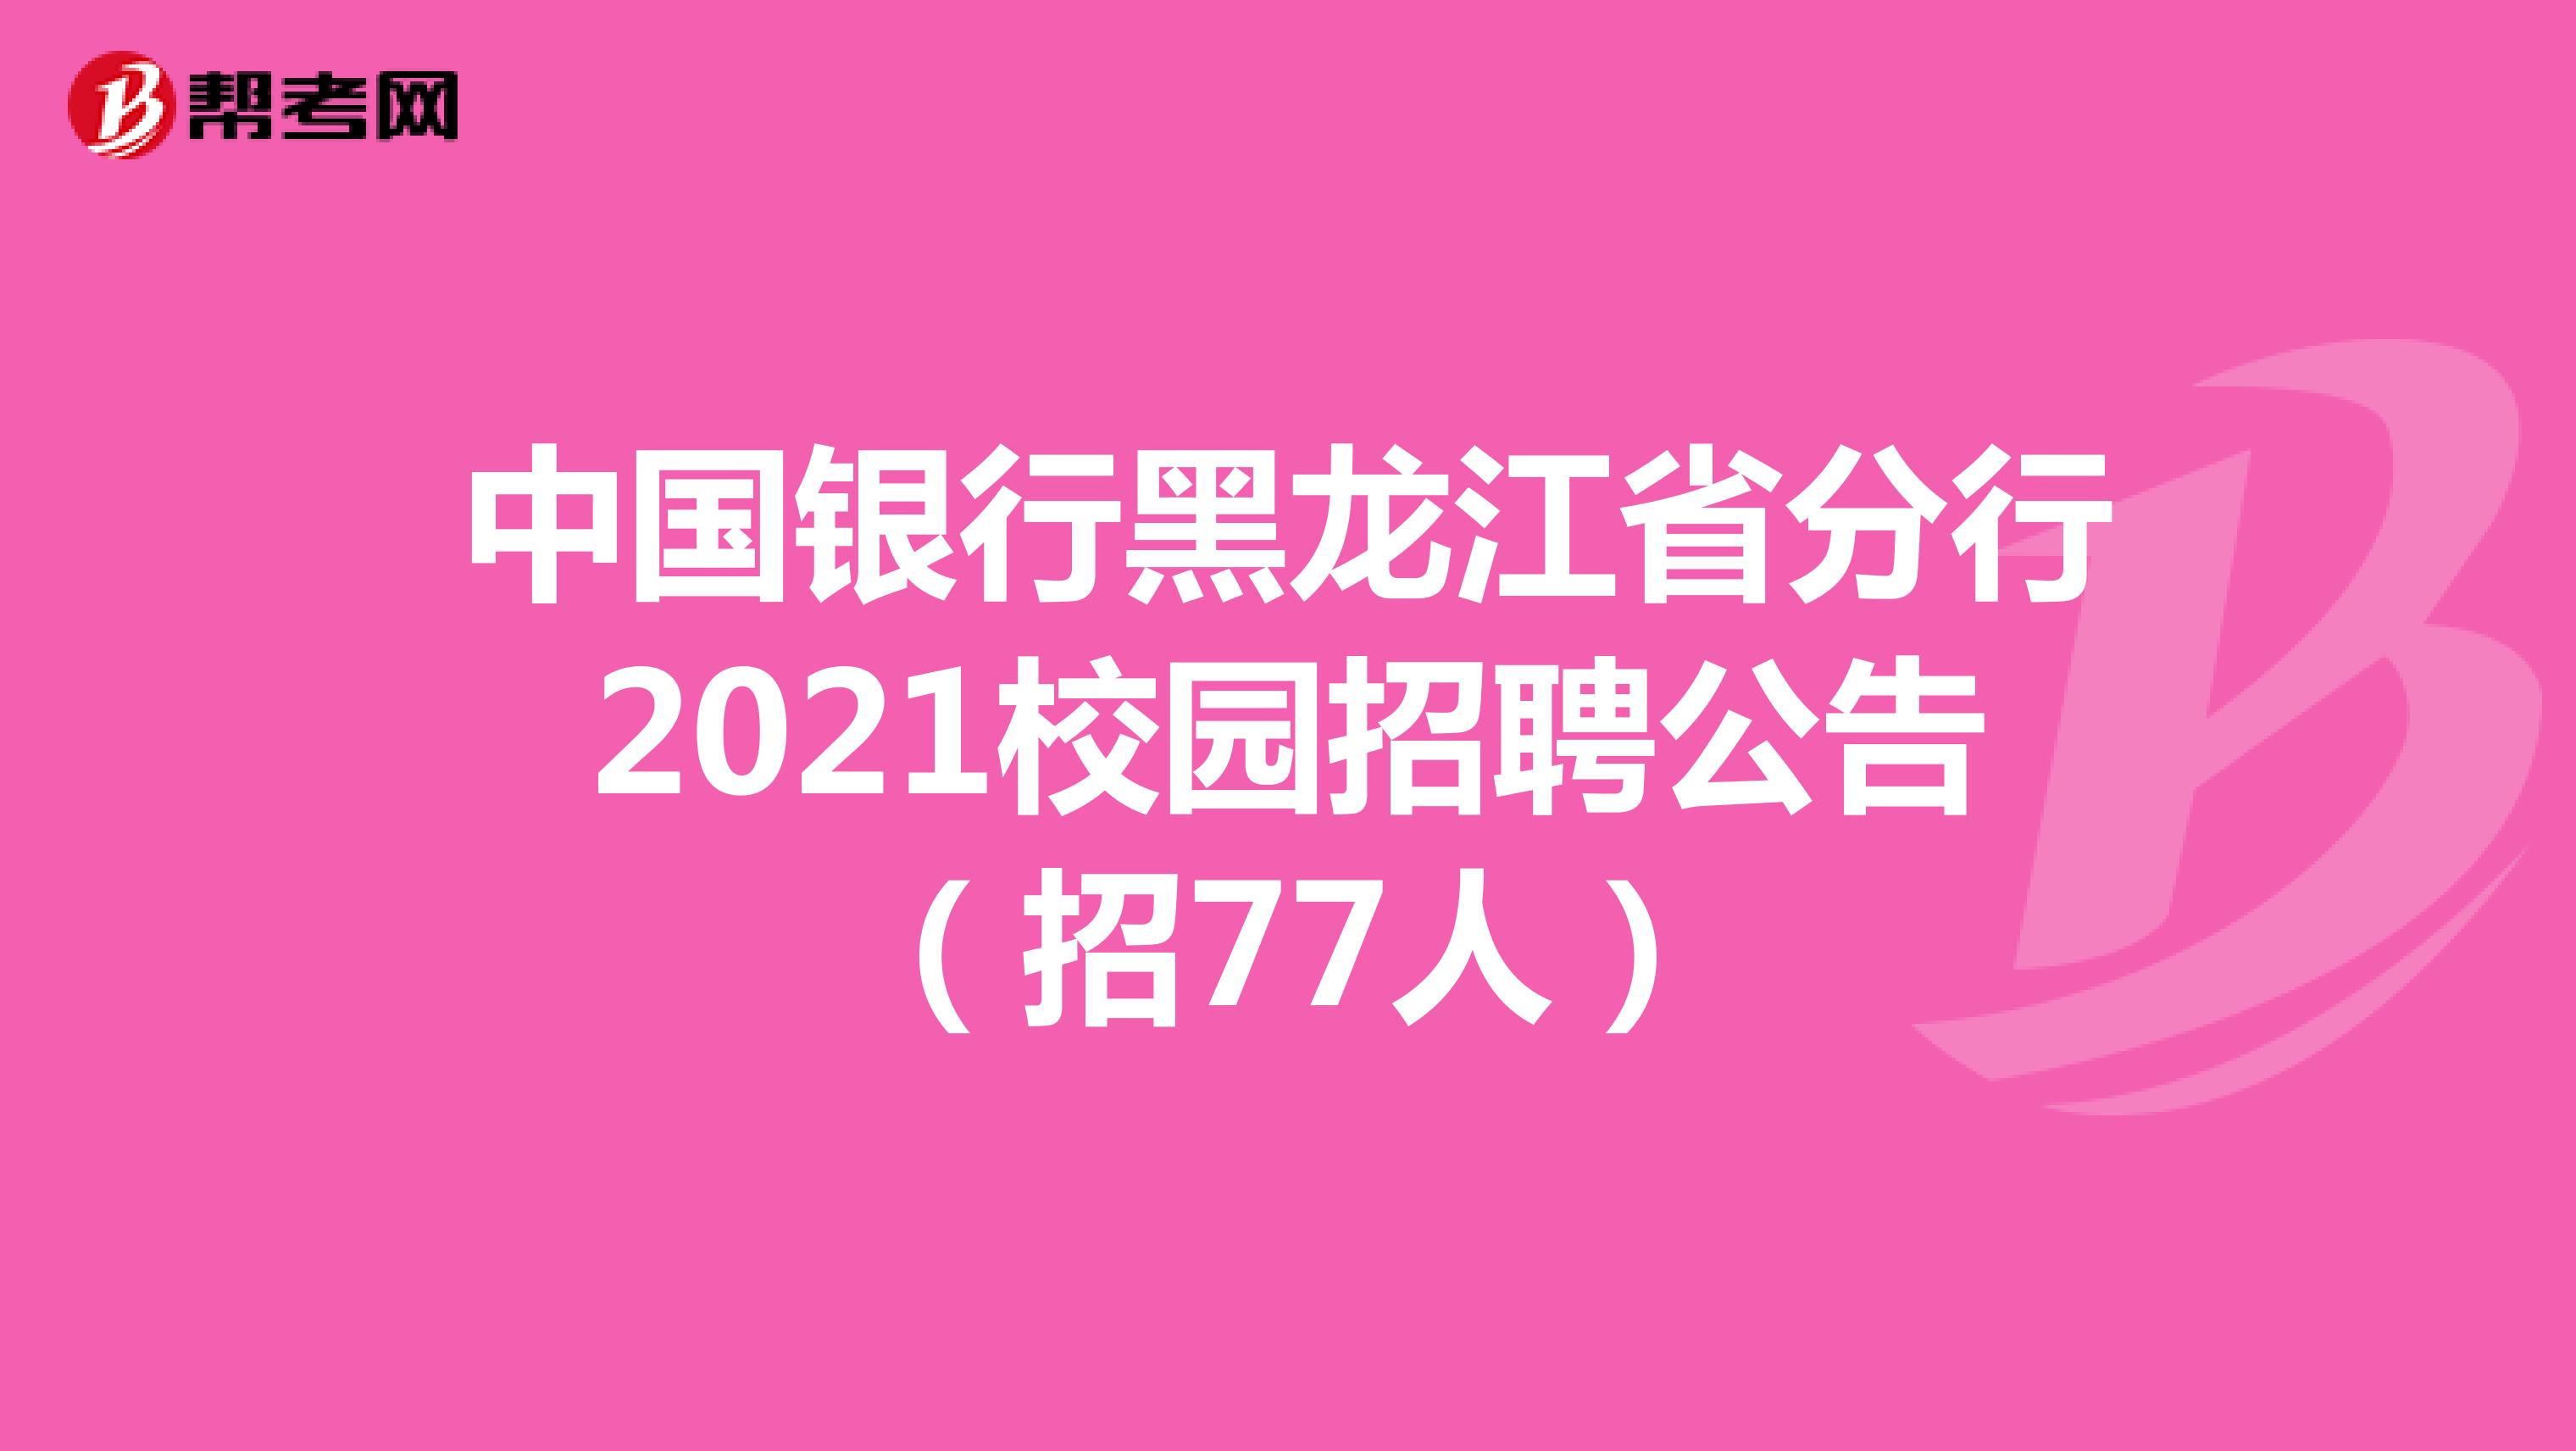 中国银行黑龙江省分行2021校园招聘公告（招77人）